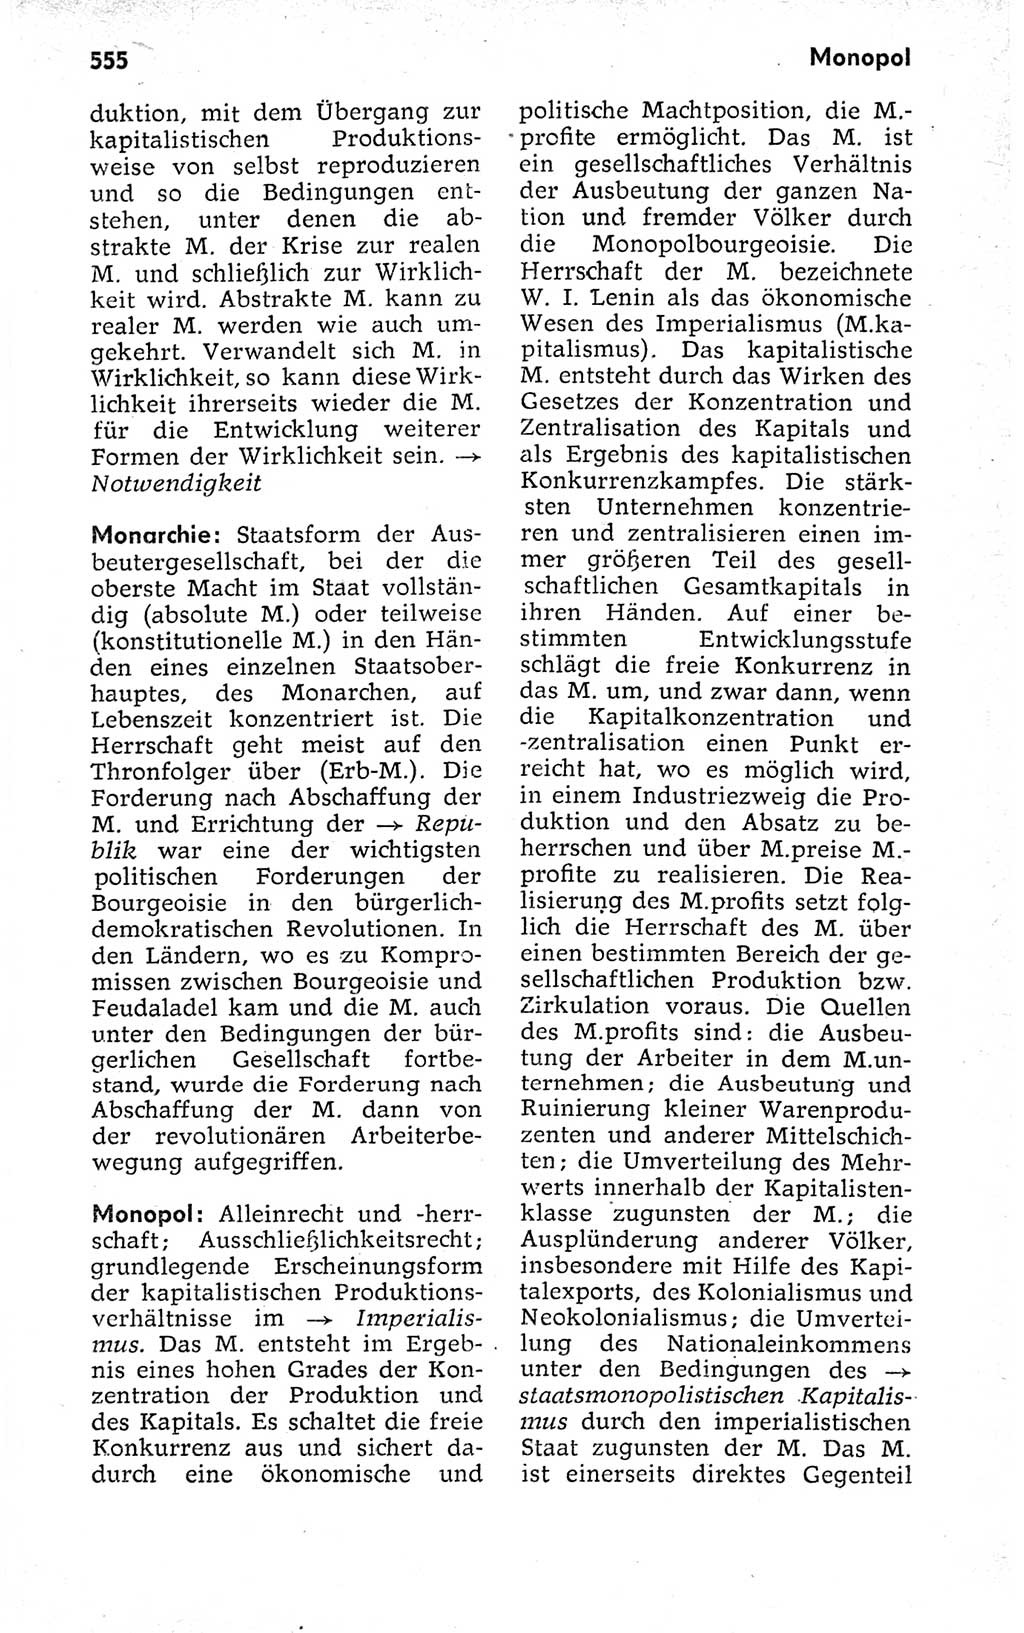 Kleines politisches Wörterbuch [Deutsche Demokratische Republik (DDR)] 1973, Seite 555 (Kl. pol. Wb. DDR 1973, S. 555)